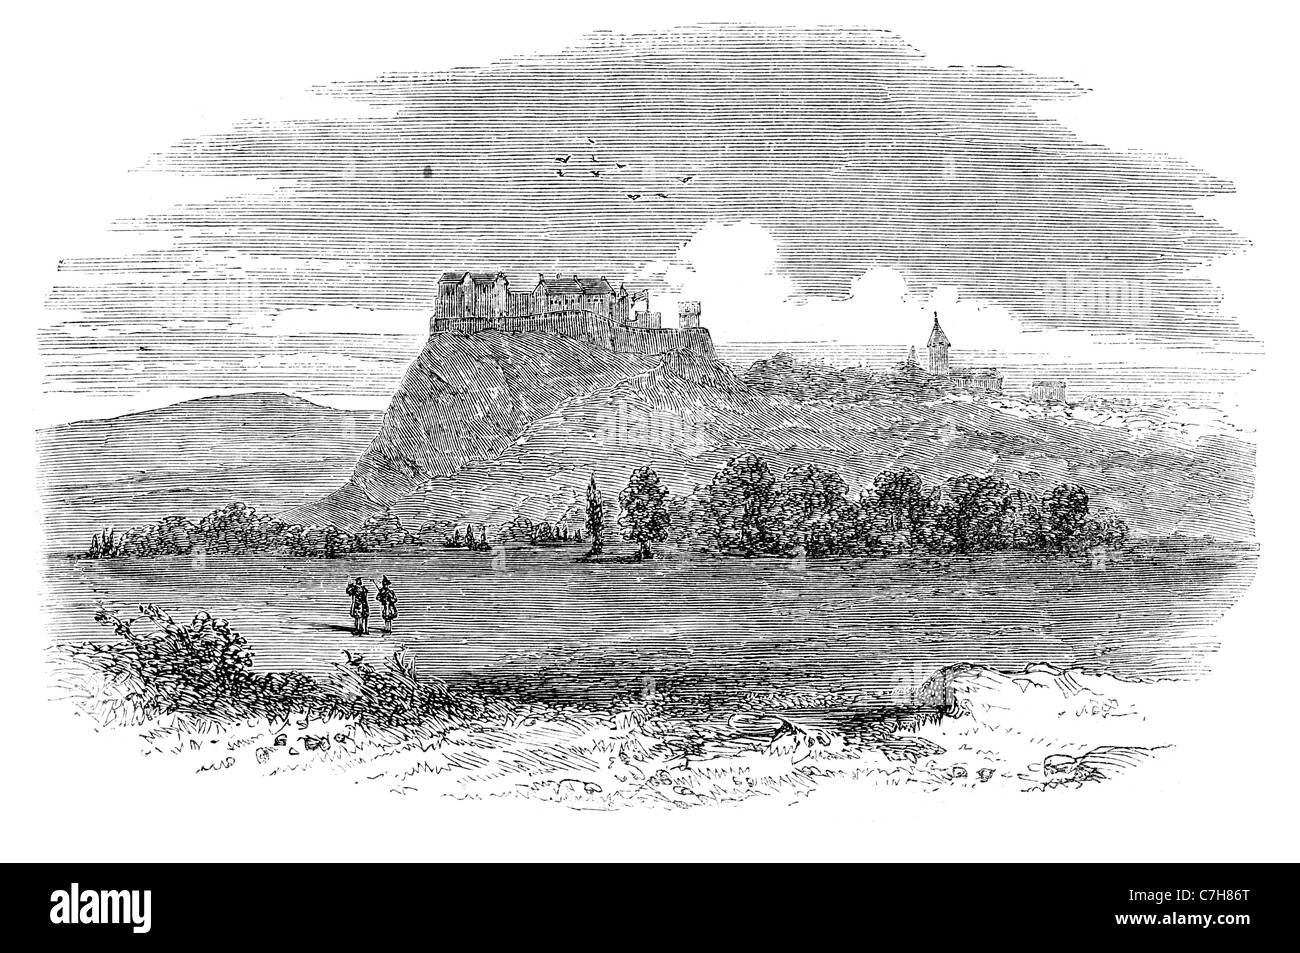 Il Castello di Stirling castelli architettura Scozia colle roccioso formazione geologica scogliere posizione difensiva strategica ubicazione fort Foto Stock